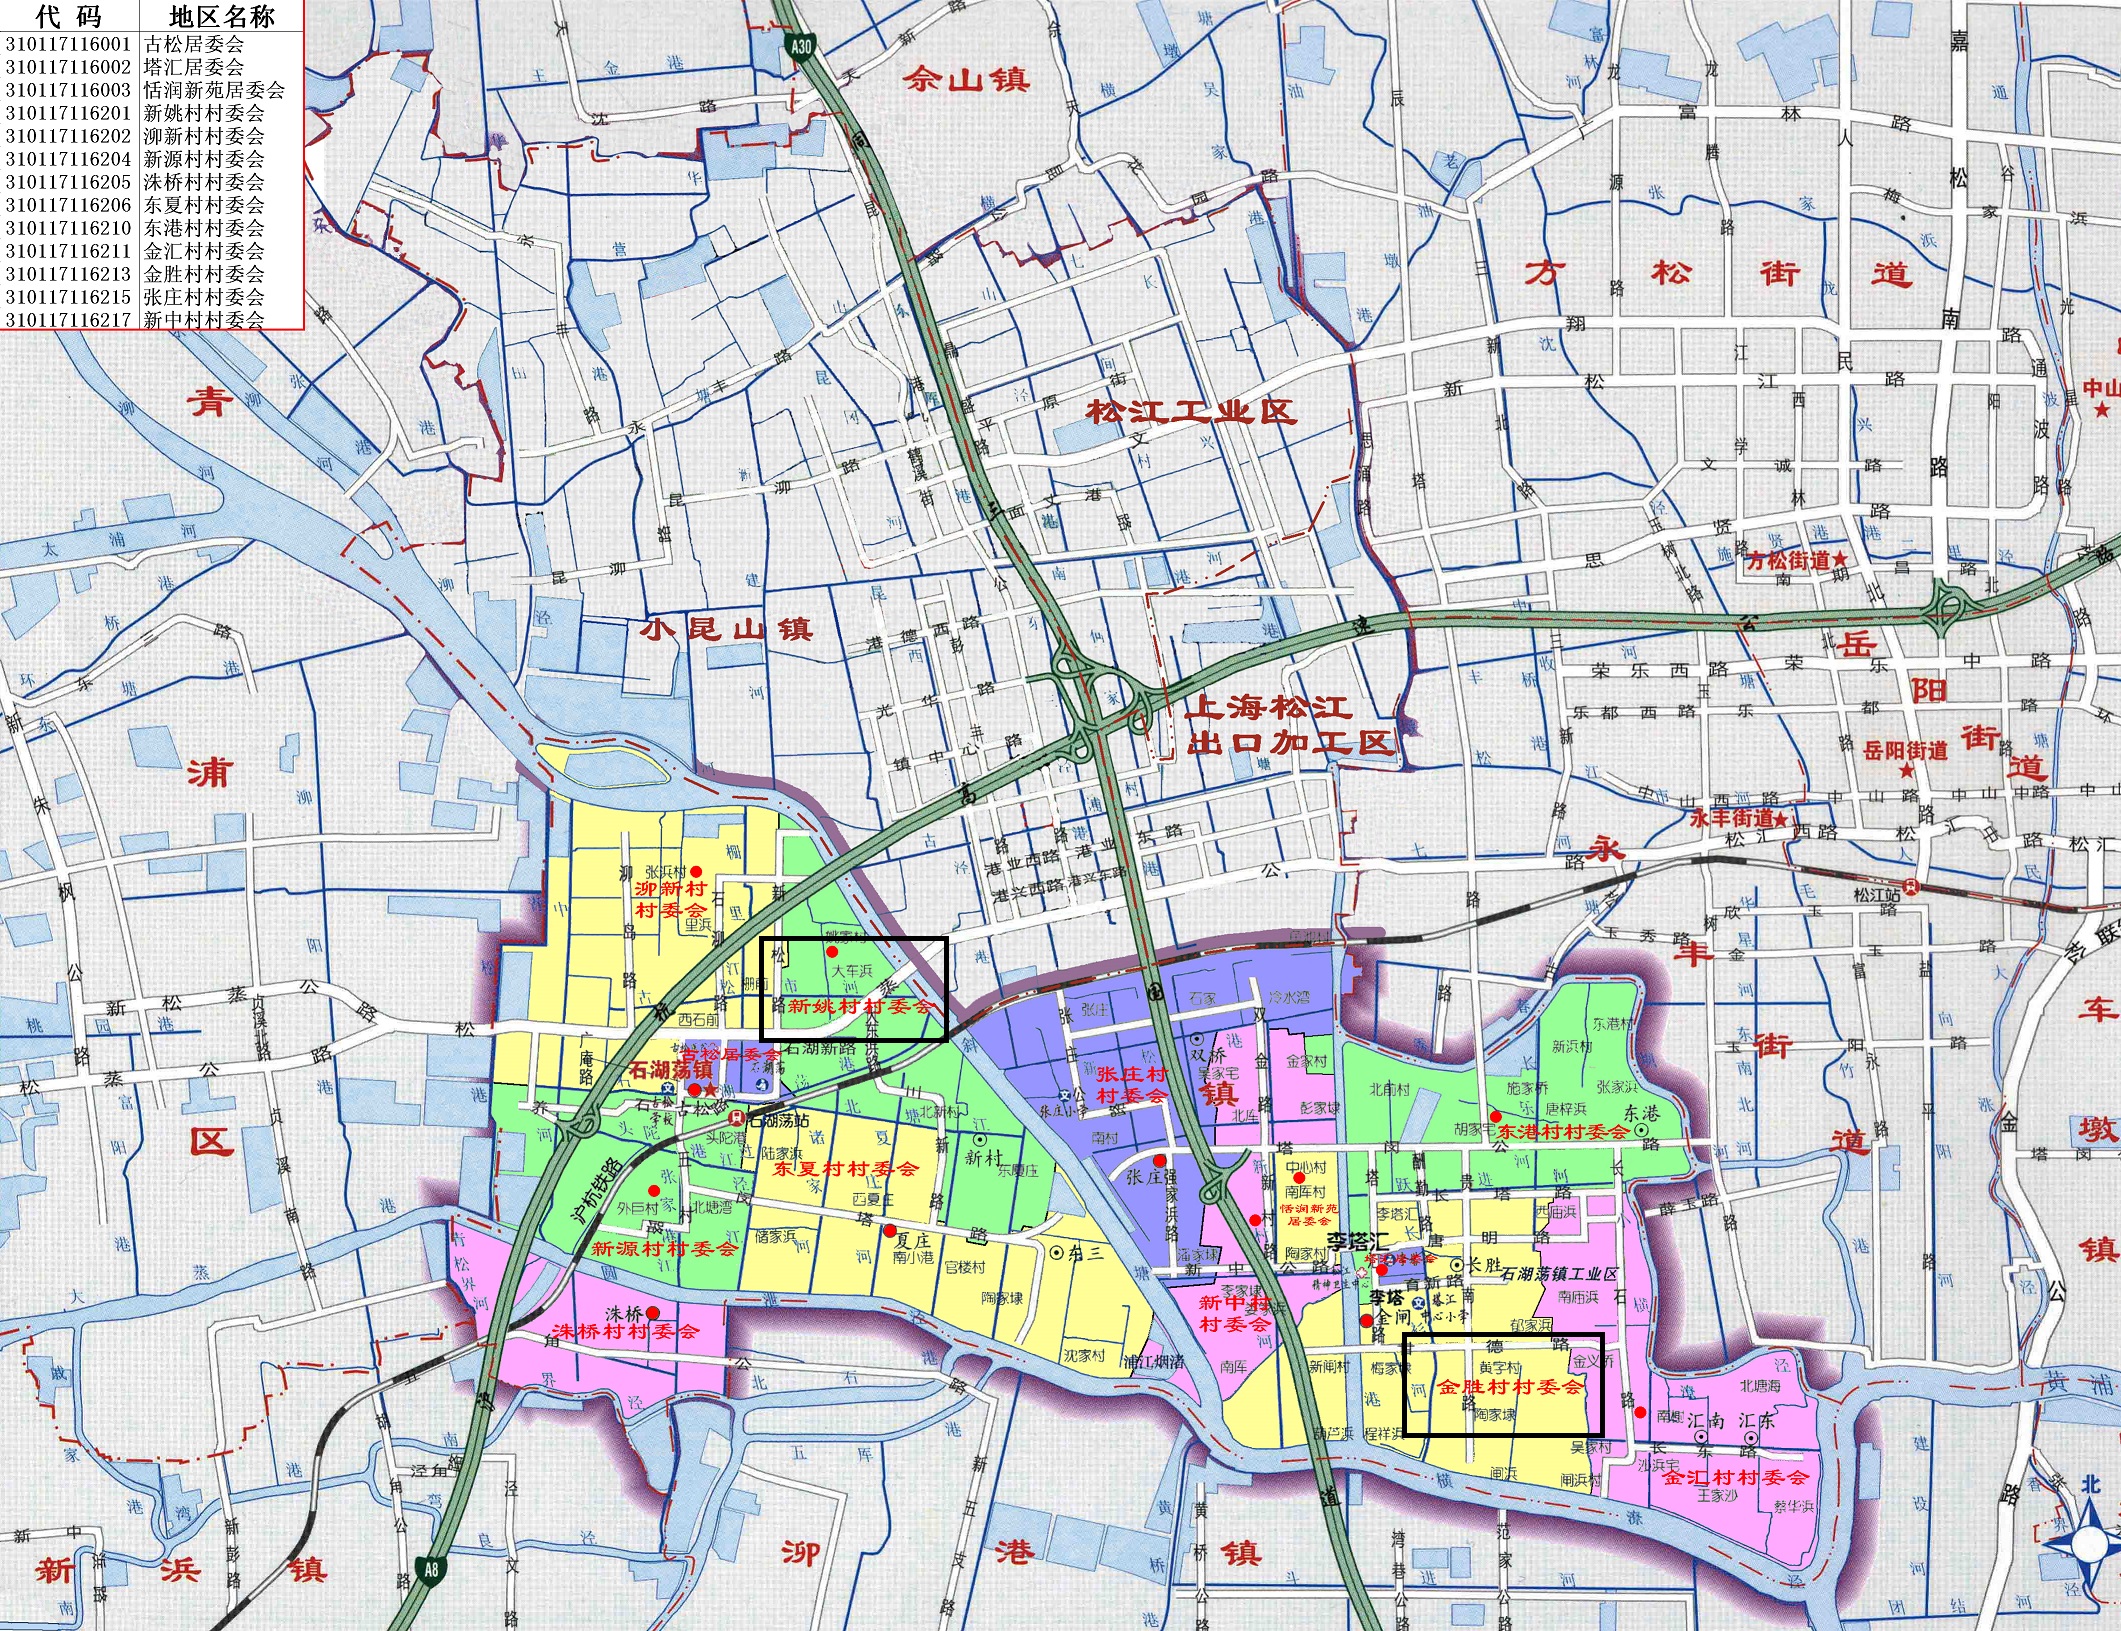 解读上海市松江区美丽乡村:全部位于南部,北部则以城区建设为主